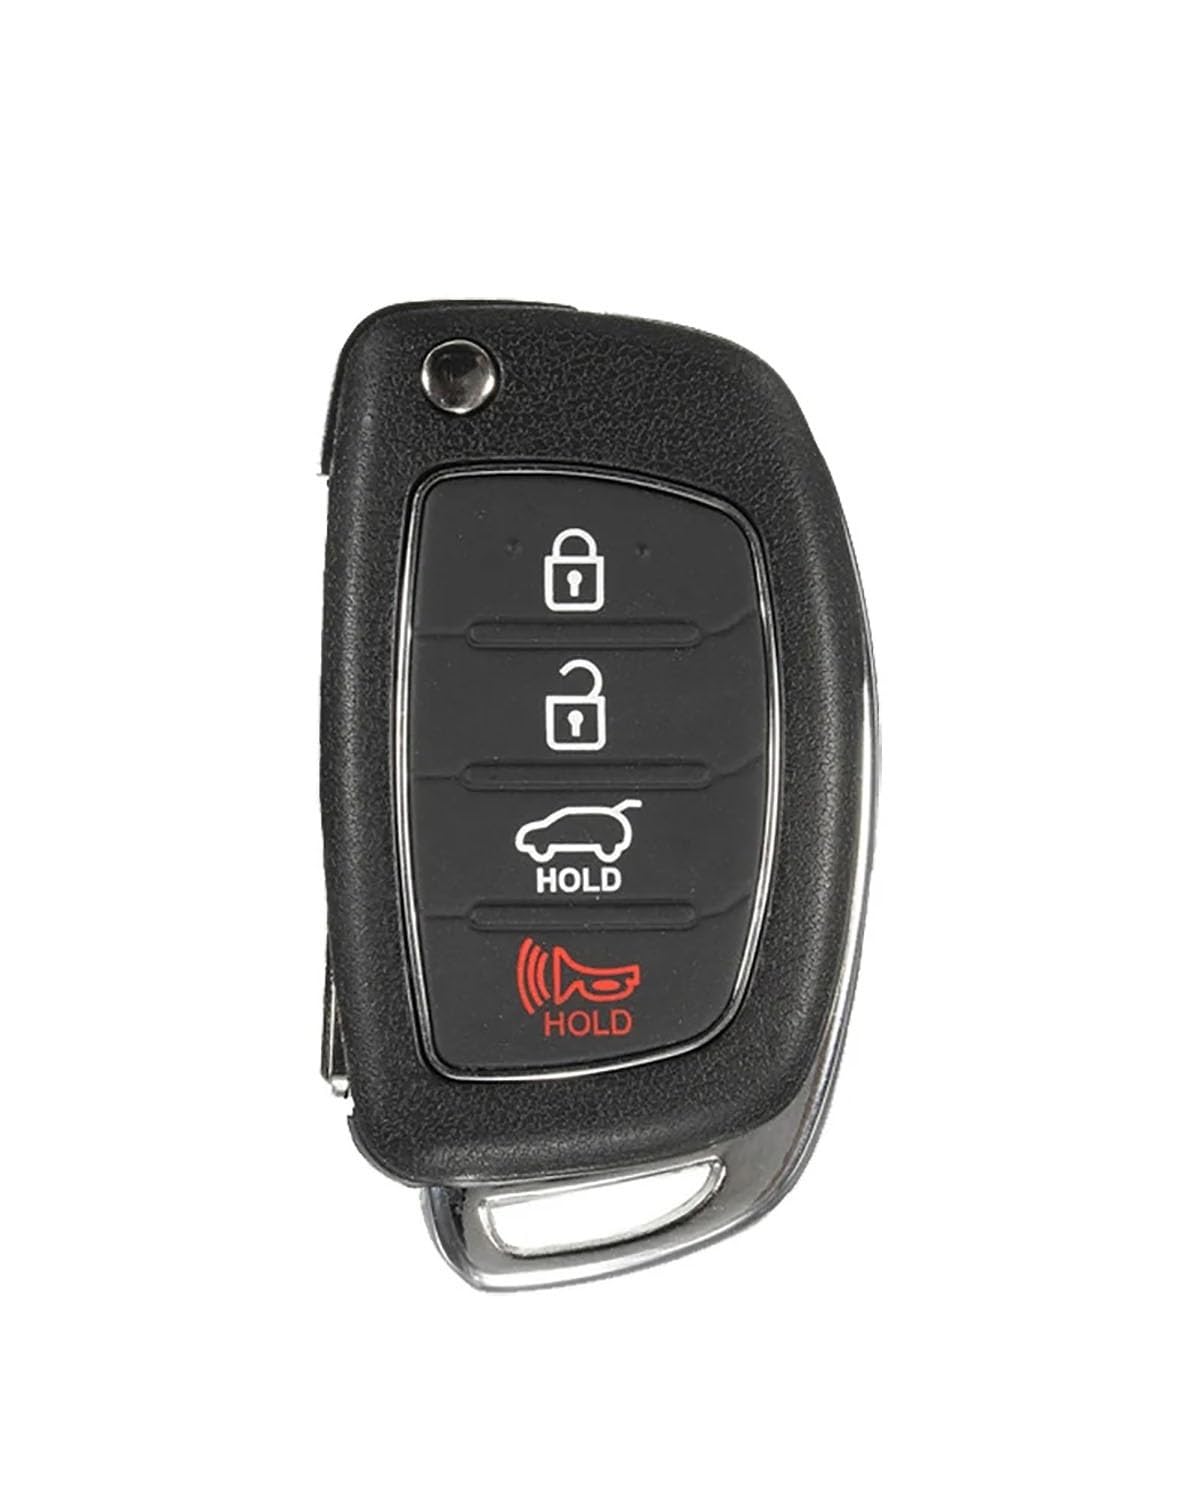 Funkschlüsseletui Silikon Autoschlüssel Hülle 4 Tasten Fernbedienung Schlüsselhülle Für Hyundai Für Sonata Für Santa Fe Für I40 Hauthalter Schutz Autoschlüsseletui von MXDDWLKJ